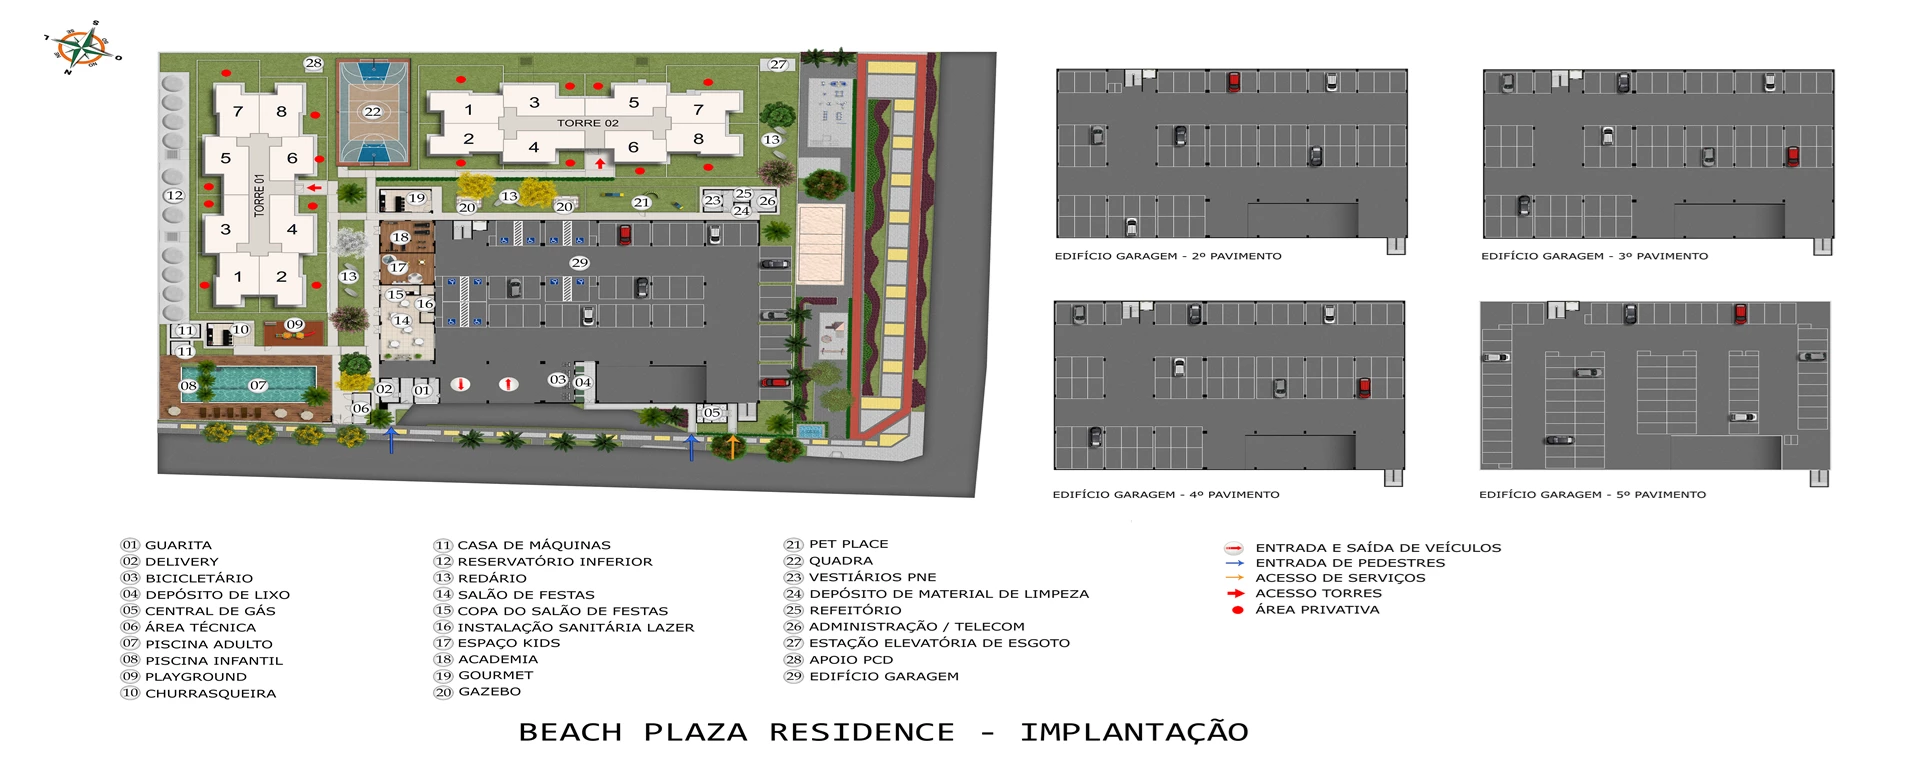 Implantação Beach Plaza Residence MRV Natal